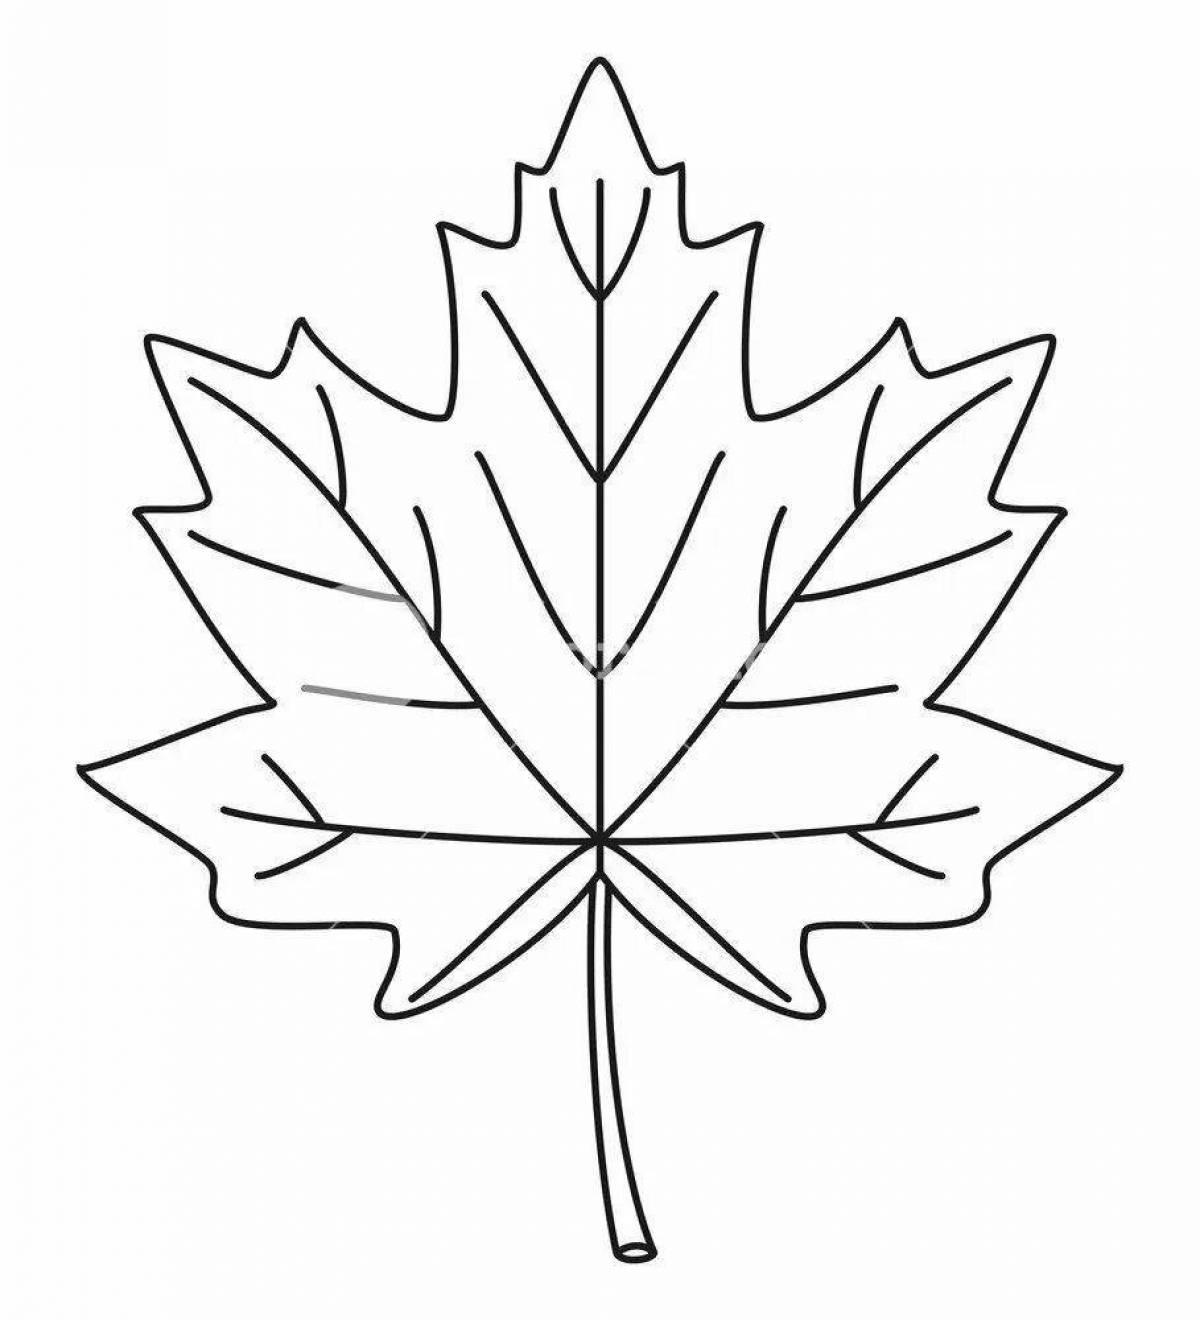 Maple leaf #5